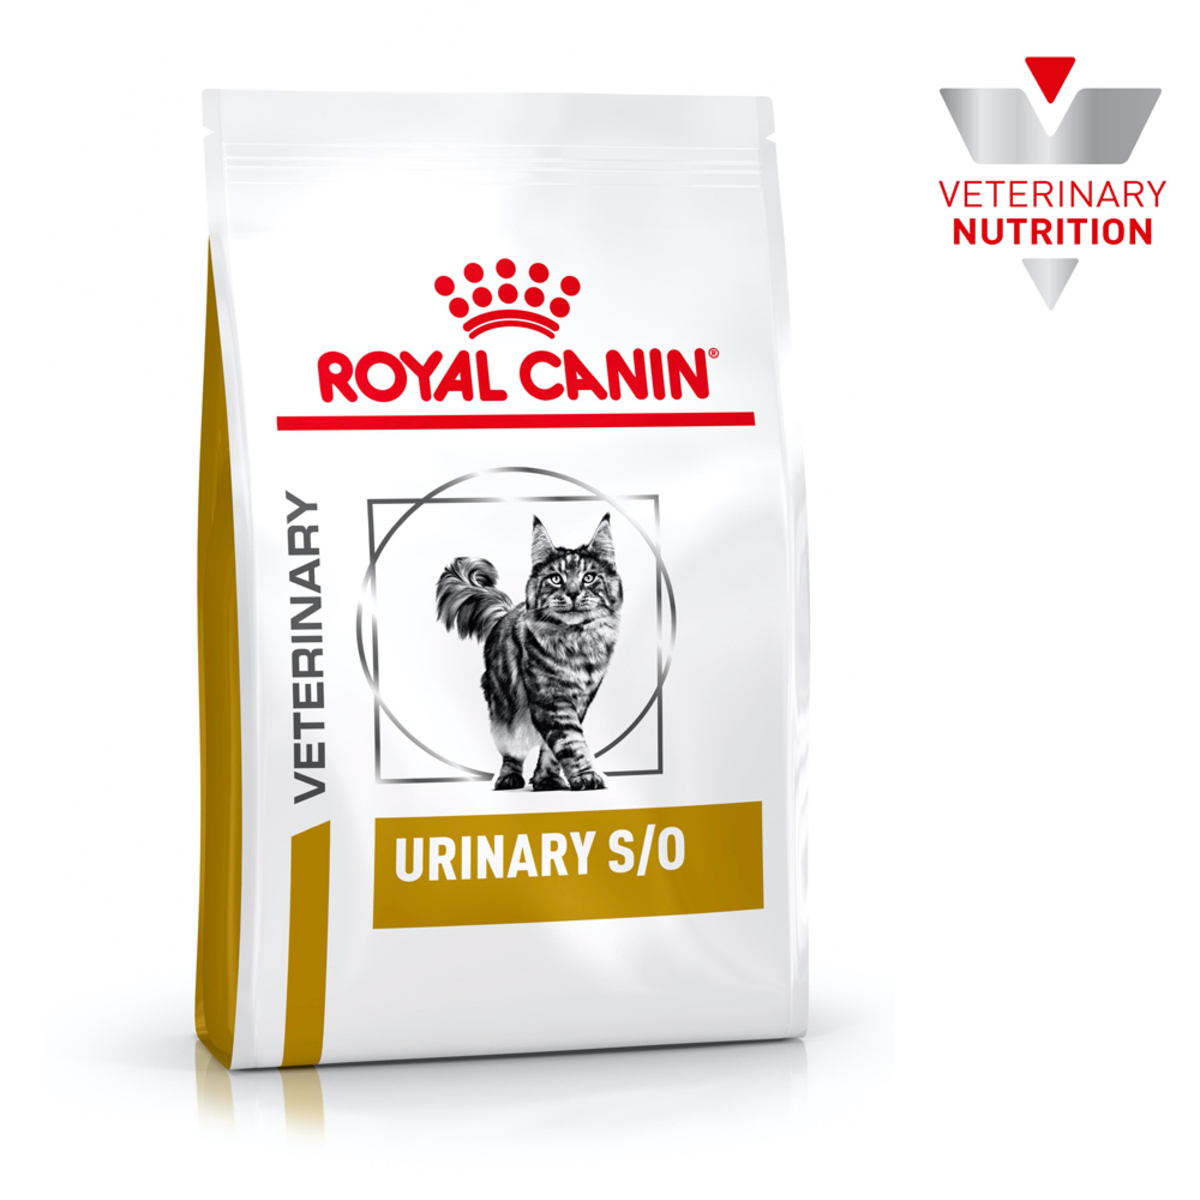 Royal Canin Prescripción Alimento Seco para Tracto Urinario para Gato Adulto, 3.5 kg